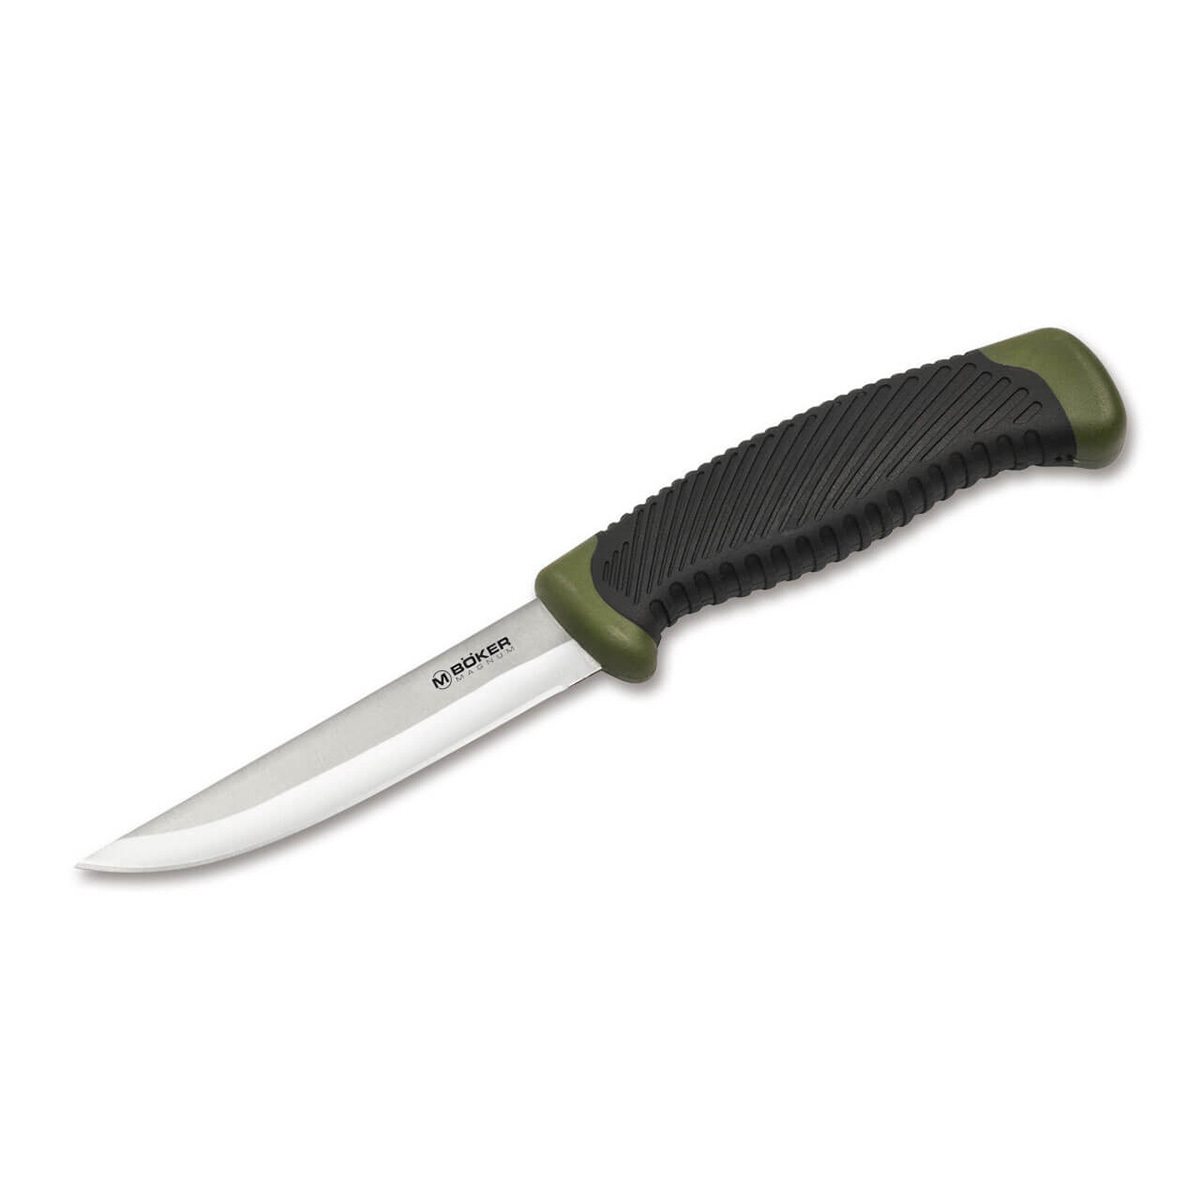 Нож рыбацкий с фиксированным клинком Magnum Falun Green, сталь 420 Satin Plain, рукоять полипропилен/термопластик нож с фиксированным клинком ontario afhgan tan micarta серрейтор